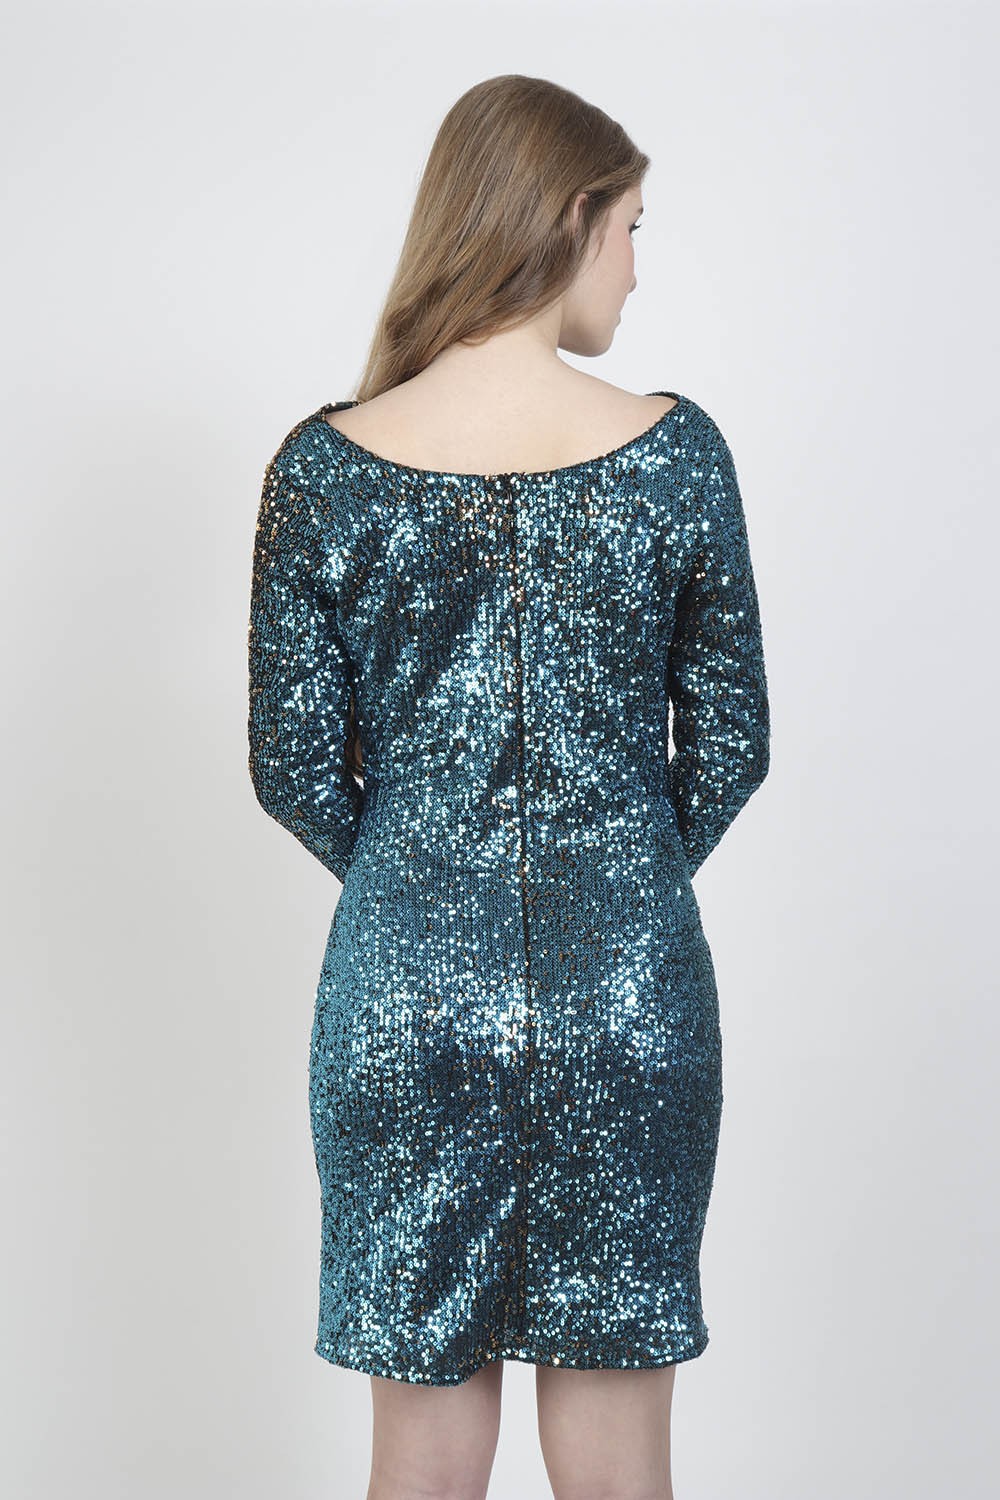 Moonlight Sequin Party Dress -2